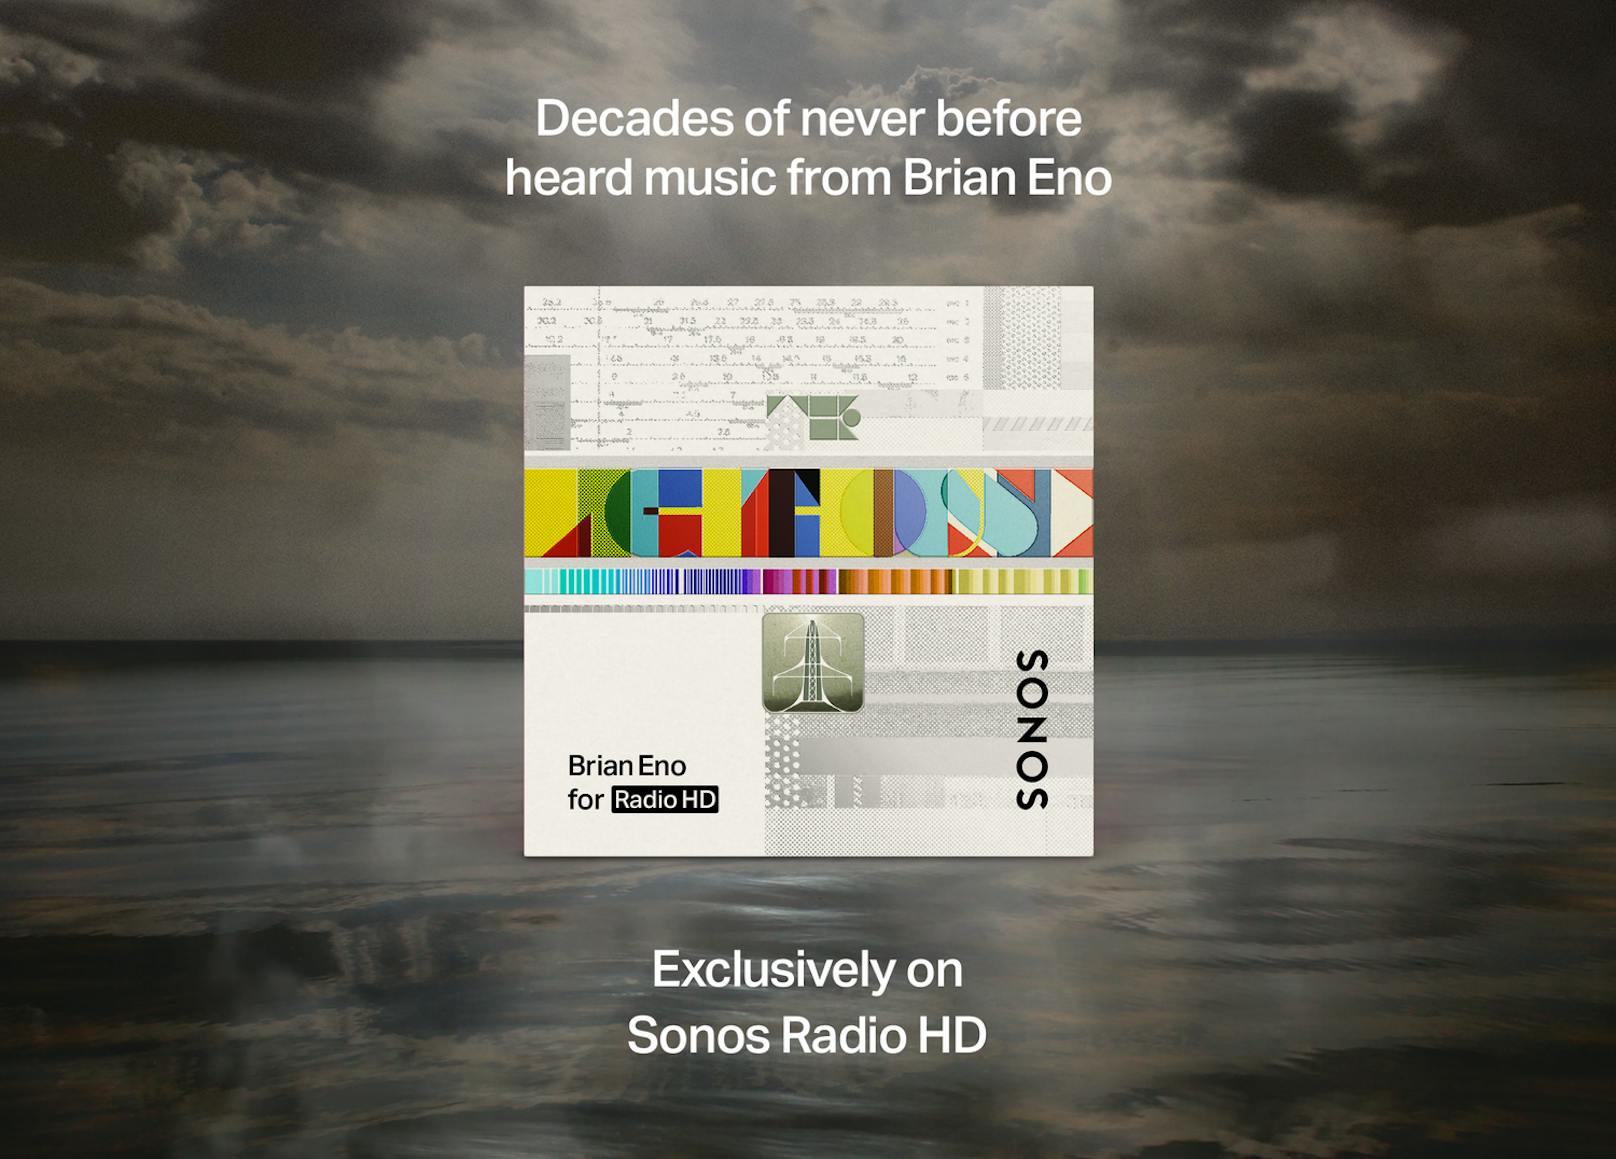 Konkret bietet Sonos Radio HD CD-Audioqualität mit (16 Bit und 44,1 kHz FLAC, was eine detailliertere Wiedergabe ermöglicht. Außerdem gibt es jede Menge exklusive Radiosender verschiedener Genres.